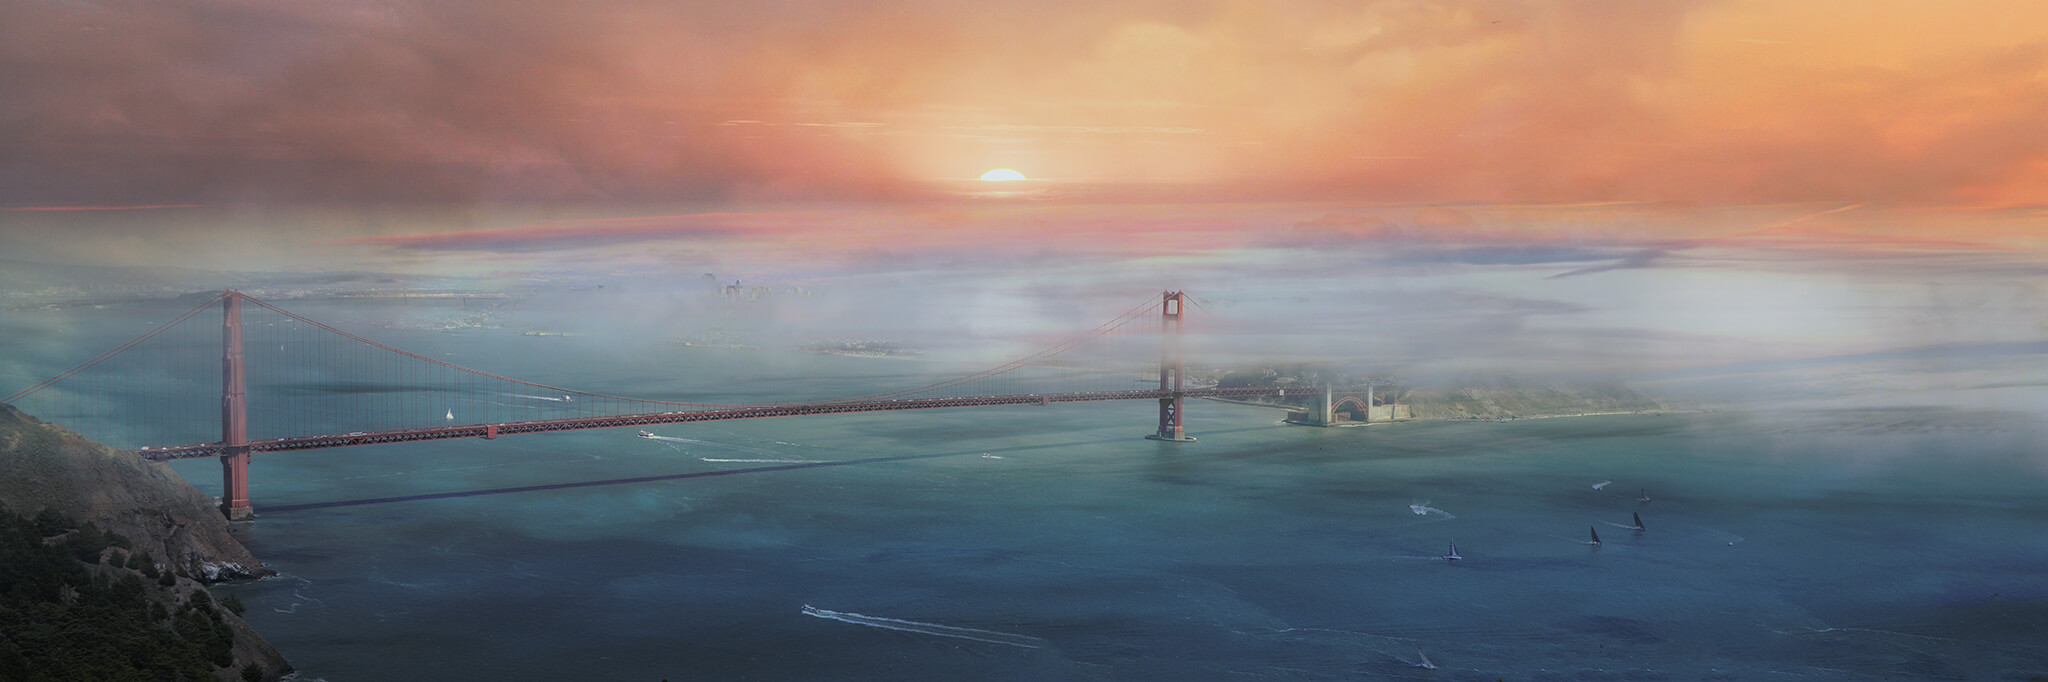 Abstract Golden Gate Sunrise Artwork